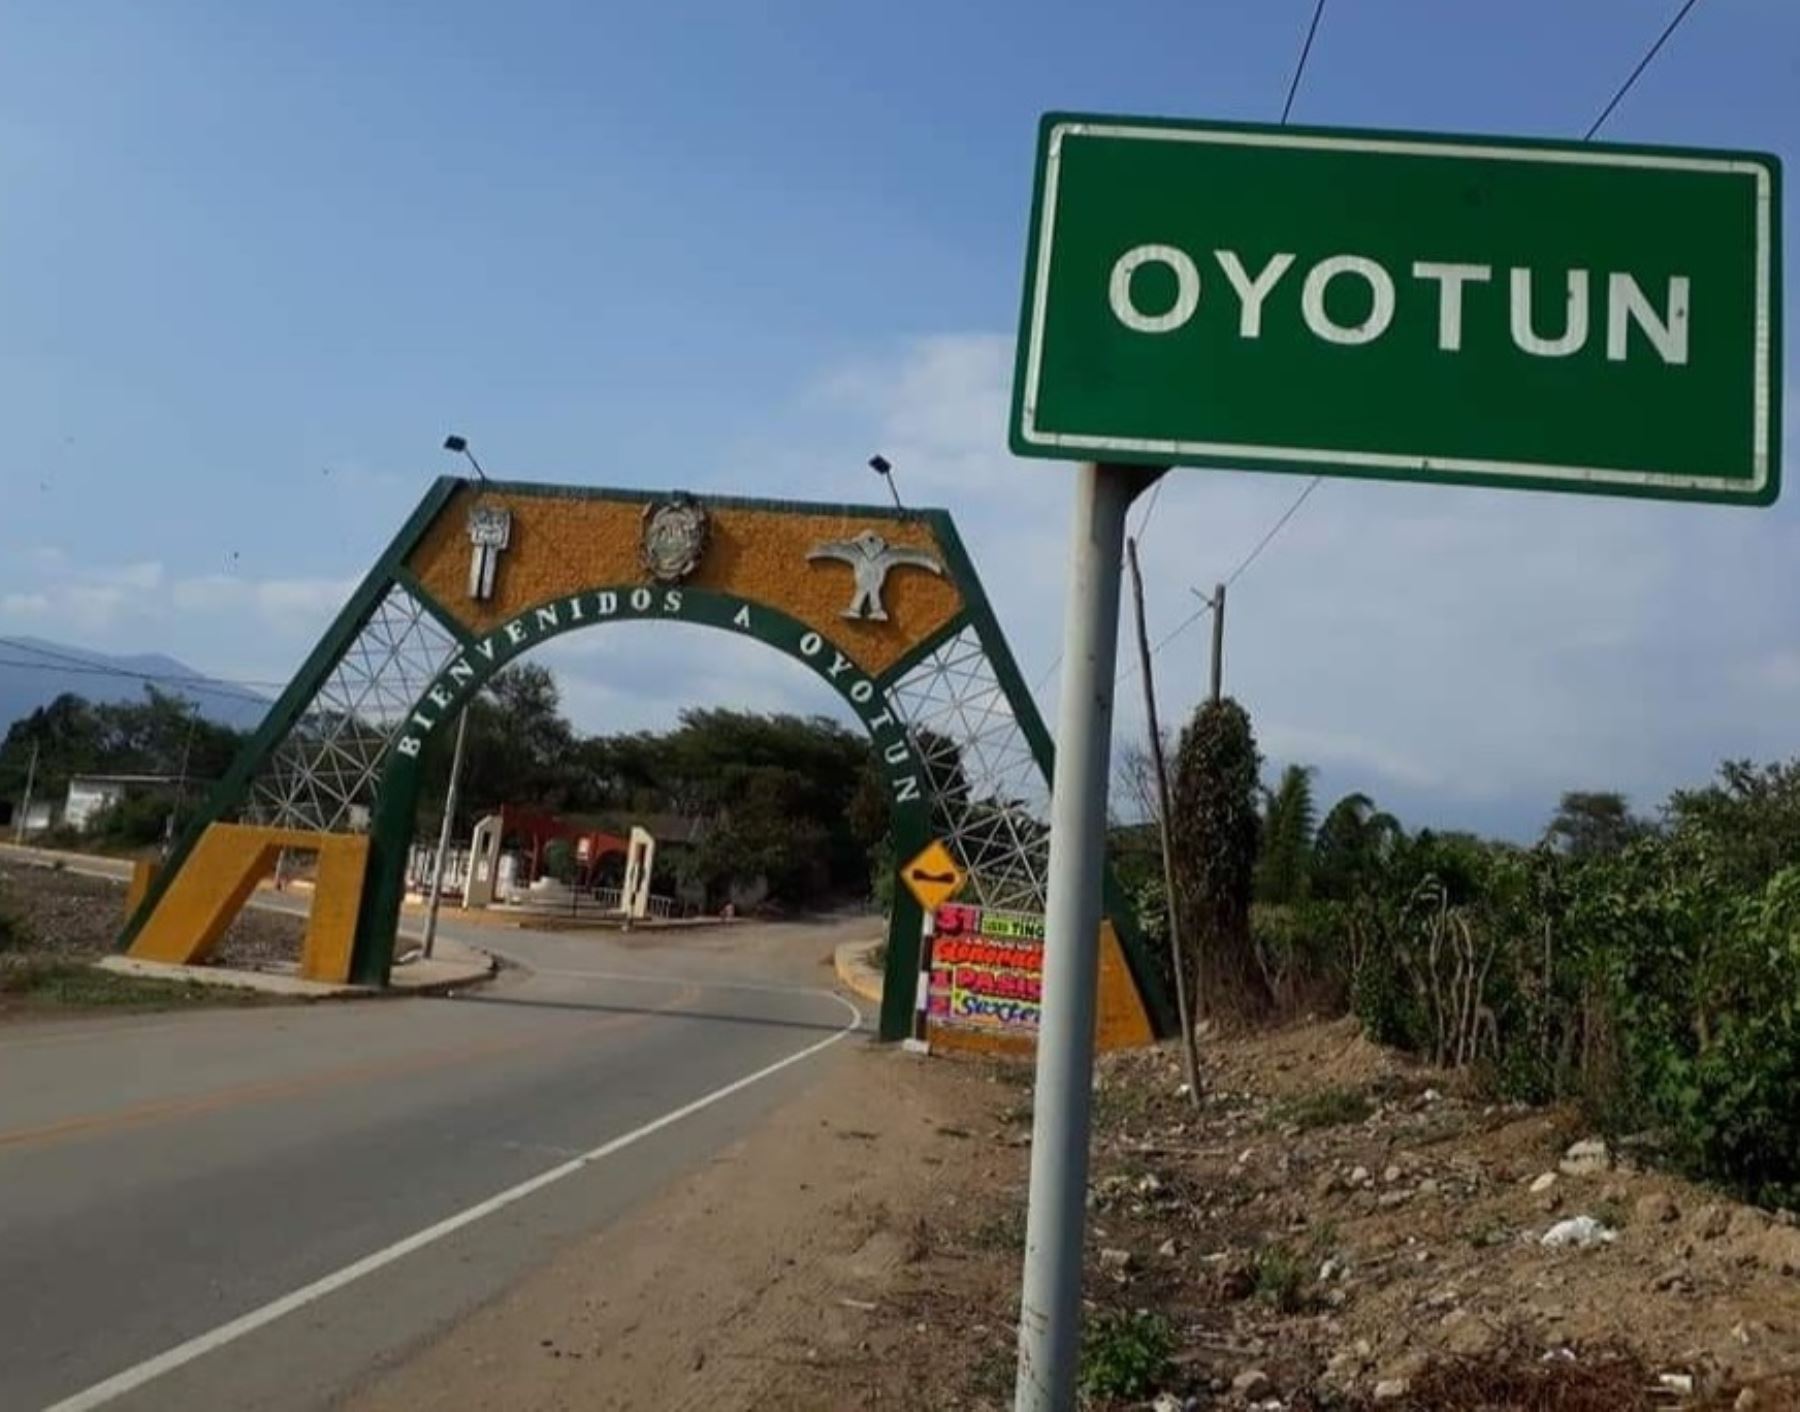 El distrito de Oyotún, región Lambayeque, espera recibir más de 5,000 visitantes para participar de actividades por la feria de San Juan Bautista, patrono de esa jurisdicción.